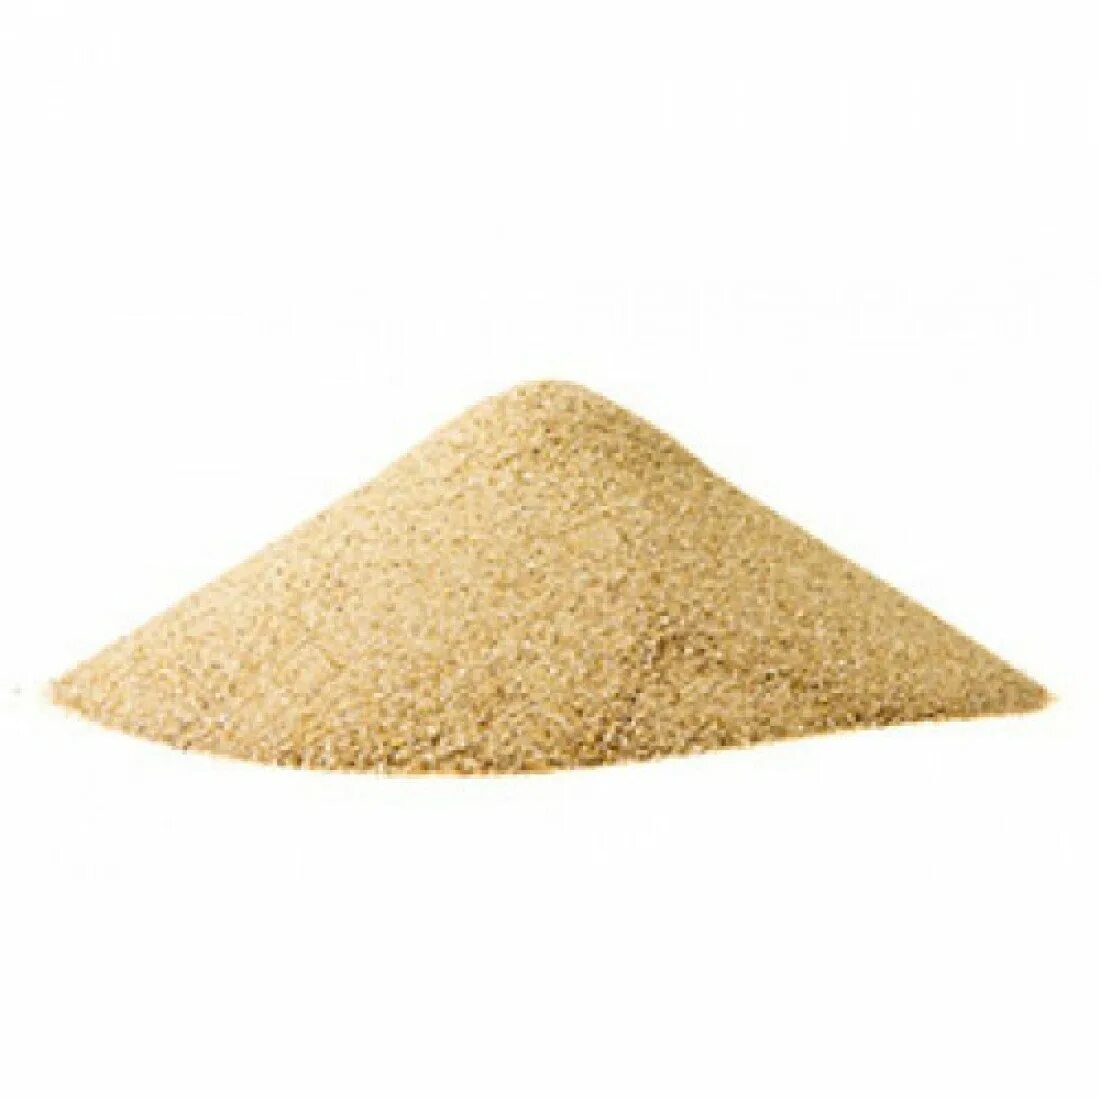 Купить песок в пензе с доставкой. Кварцевый песок. Куча песка. Песок сеяный. Кучка песка.